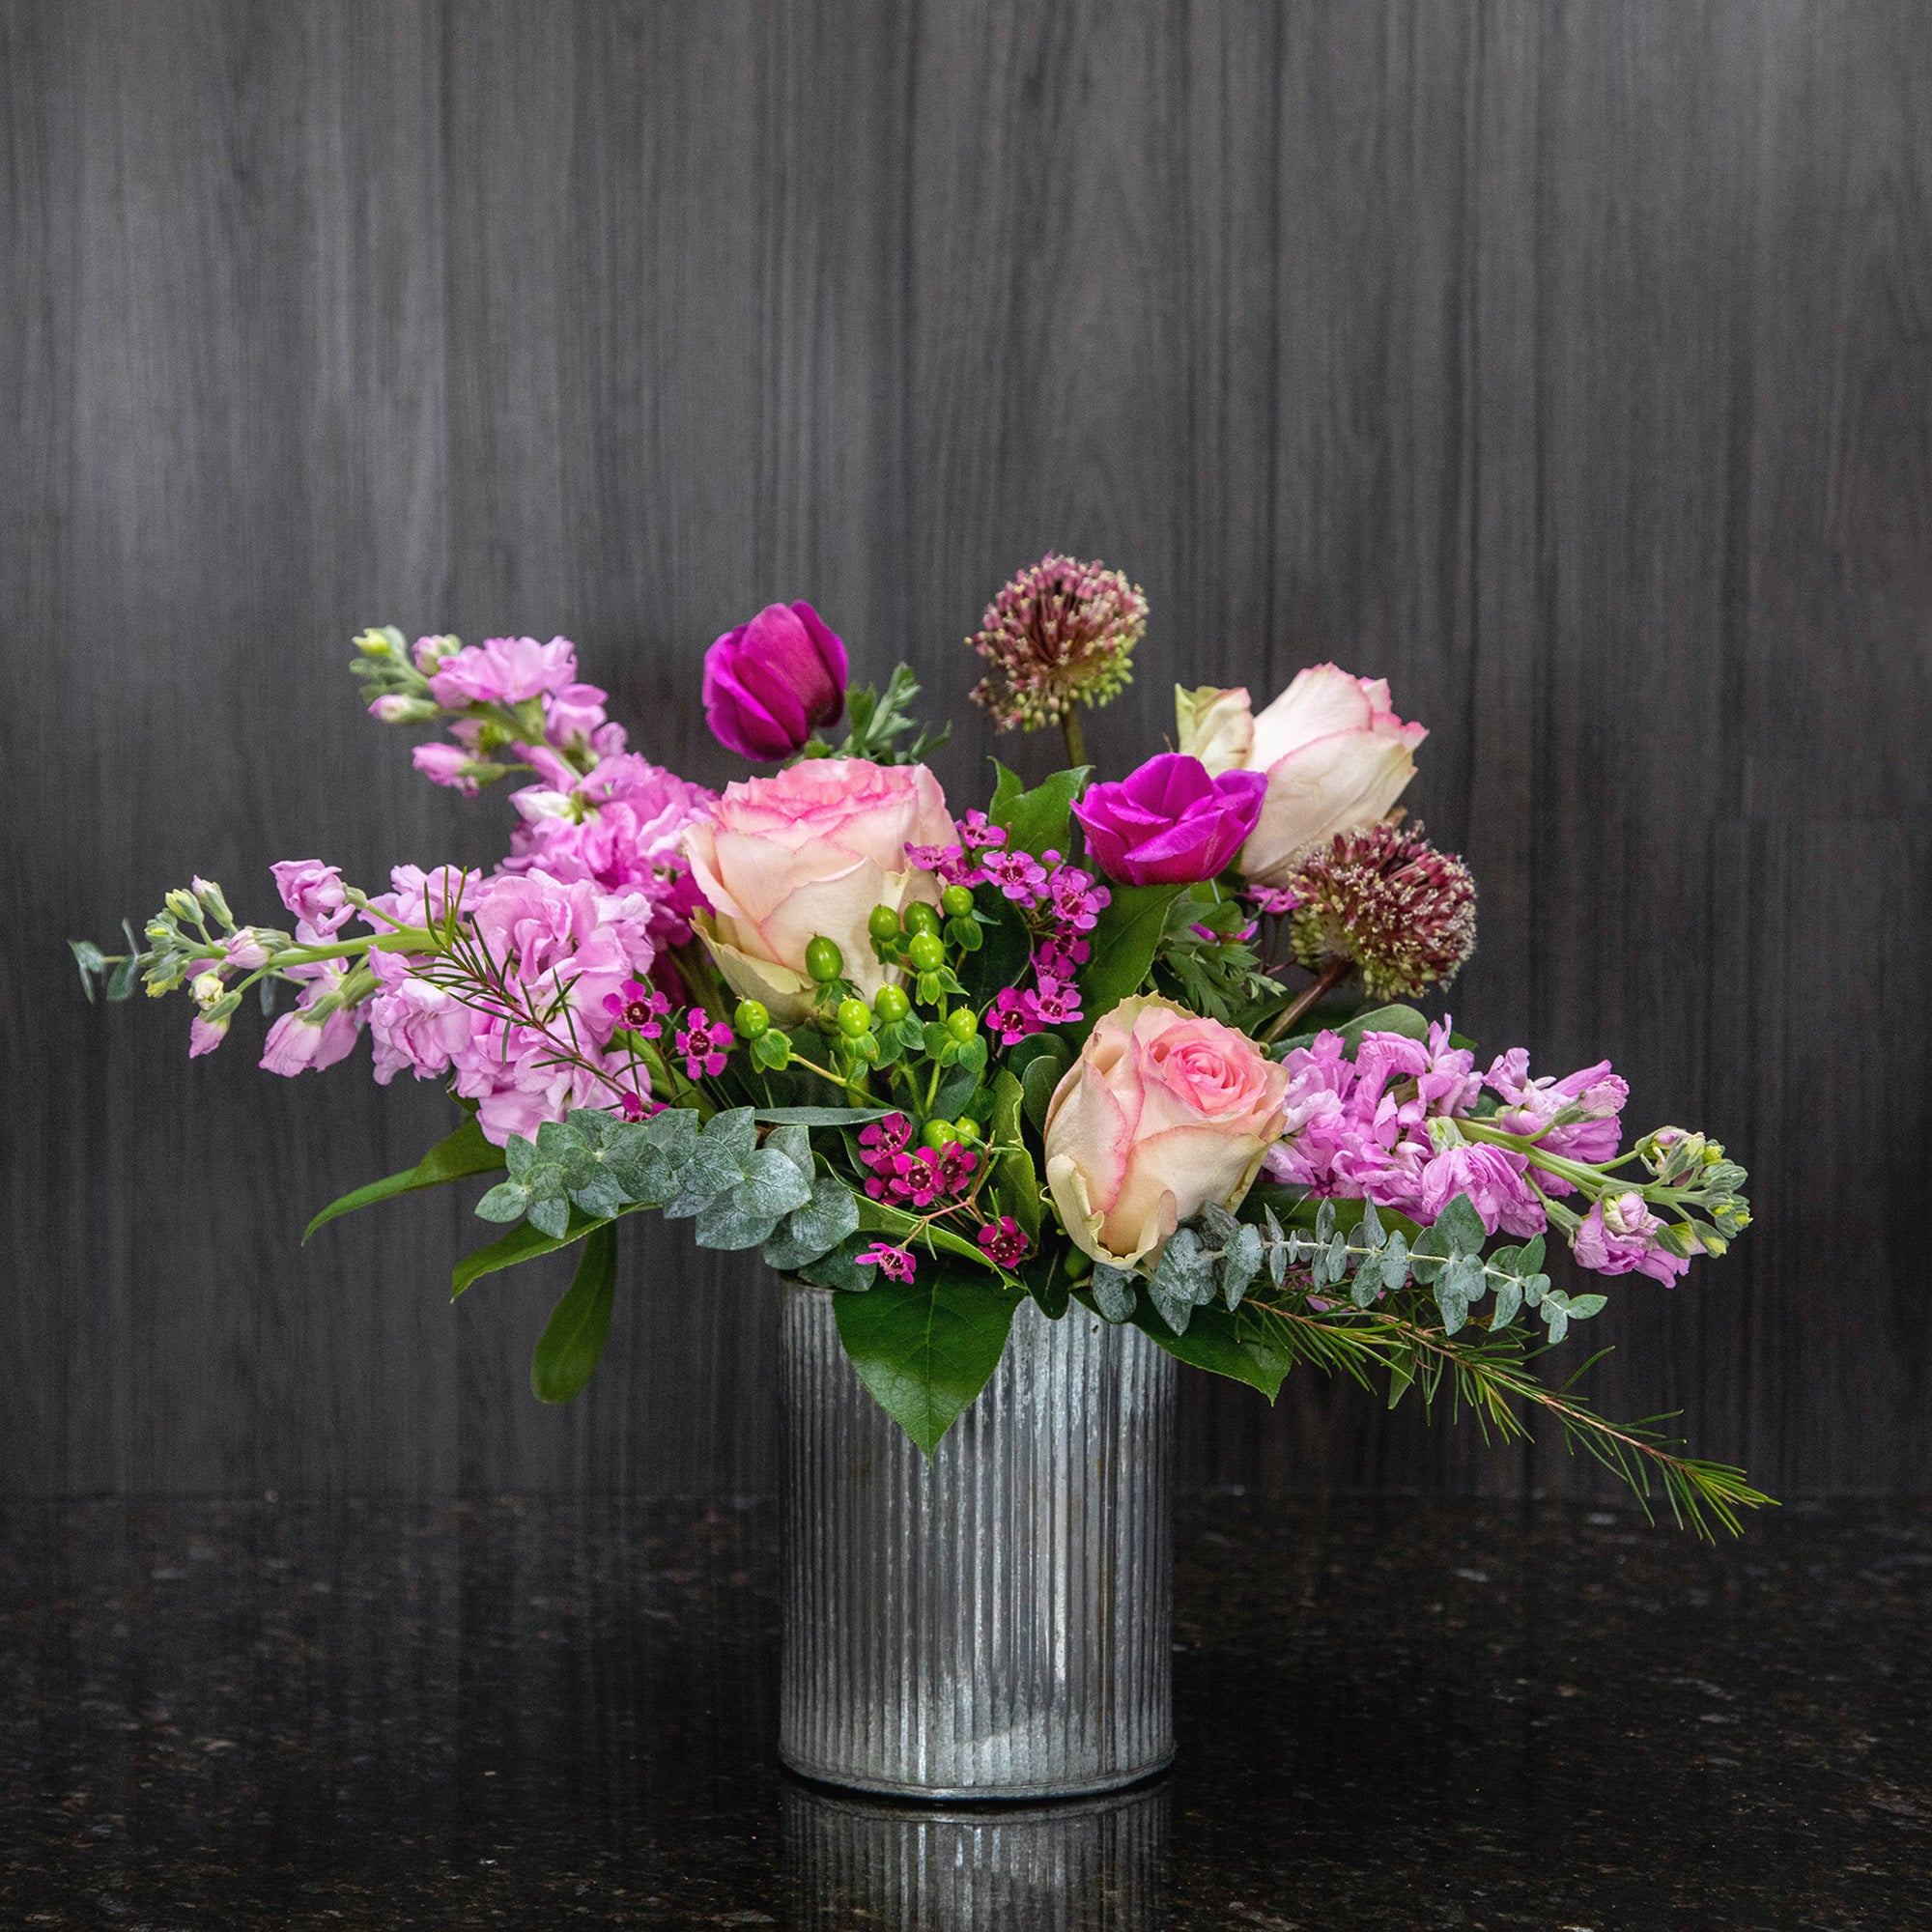 Spray Rose Boutonniere - Le Bouquet Florist in Scottsdale, AZ